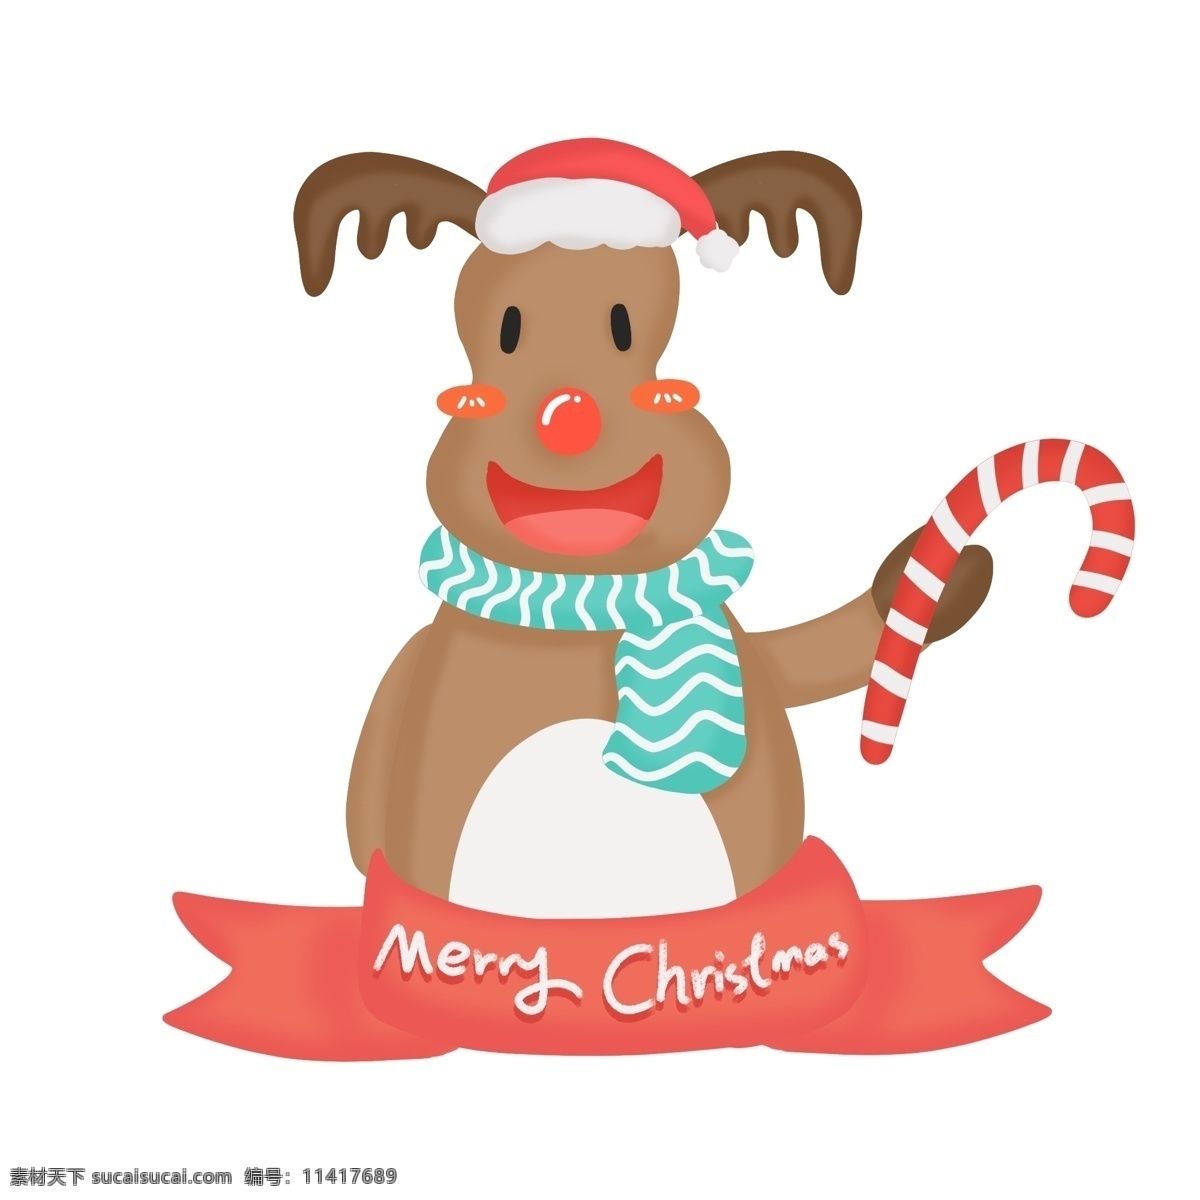 手绘 圣诞节 可爱 圣诞 鹿 麋鹿 元素 圣诞鹿 圣诞麋鹿 圣诞节字体 可爱麋鹿 可爱小鹿 可爱圣诞鹿 手绘圣诞麋鹿 手绘圣诞鹿 卡通圣诞鹿 圣诞节英文 圣诞拐杖